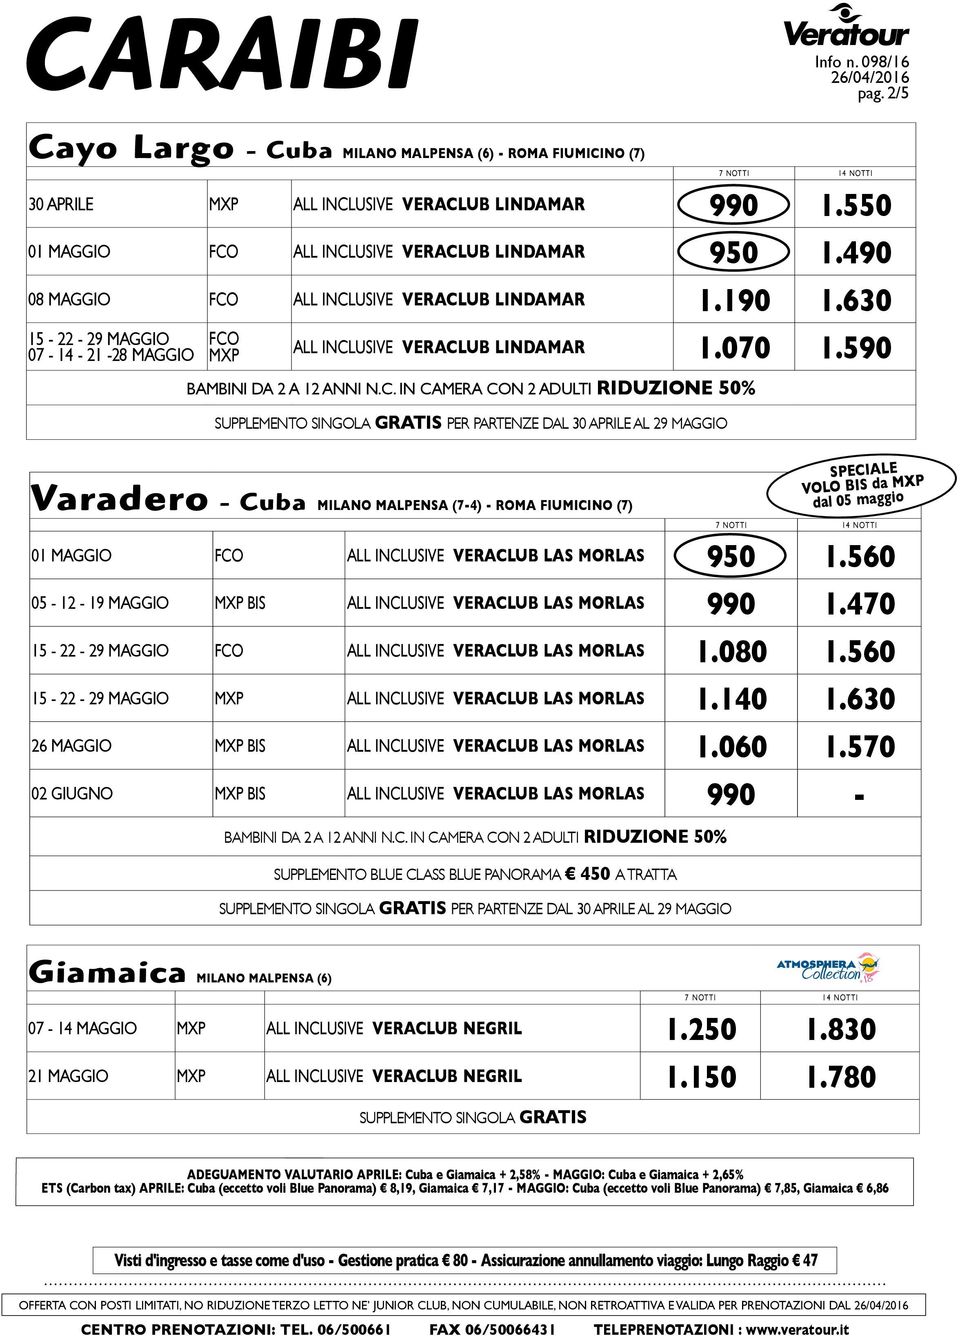 590 SUPPLEMENTO SINGOLA GRATIS PER PARTENZE DAL 30 APRILE AL 29 MAGGIO Varadero - Cuba MILANO MALPENSA (7-4) - ROMA FIUMICINO (7) 01 MAGGIO FCO ALL INCLUSIVE VERACLUB LAS MORLAS 950 1.